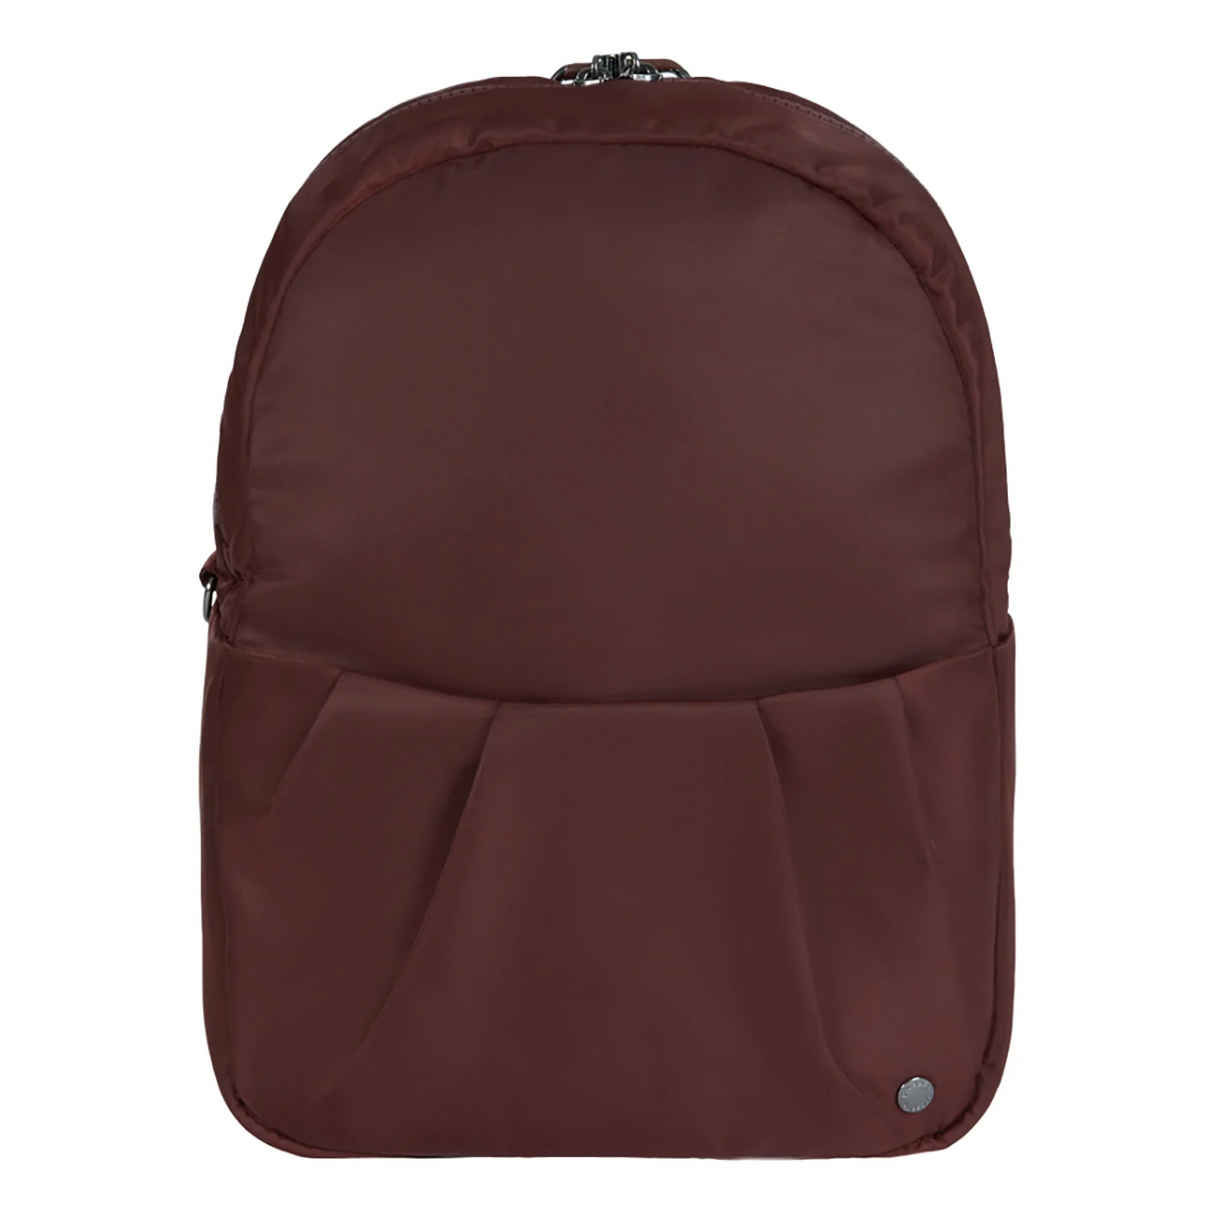 Merlot Citysafe Convertible CX Backpack